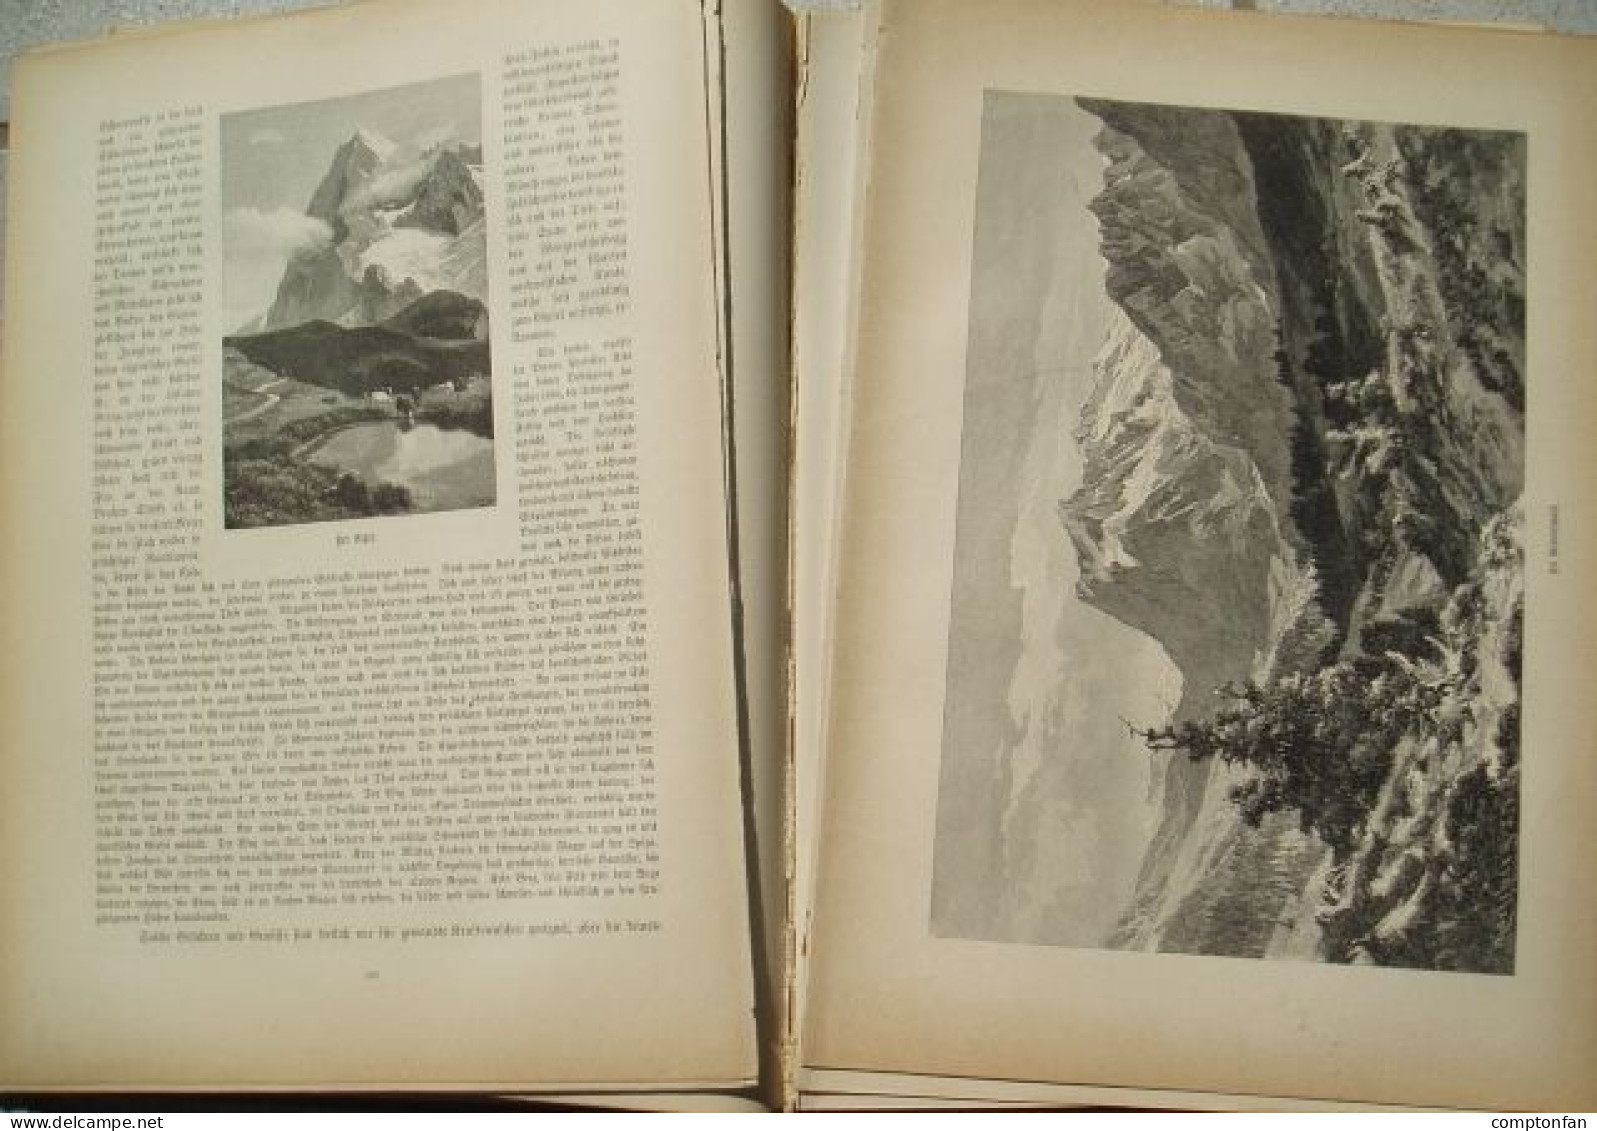 B100 880 Gsell-Fels Die Schweiz Compton Prachtband Rarität 1883 !! - Alte Bücher